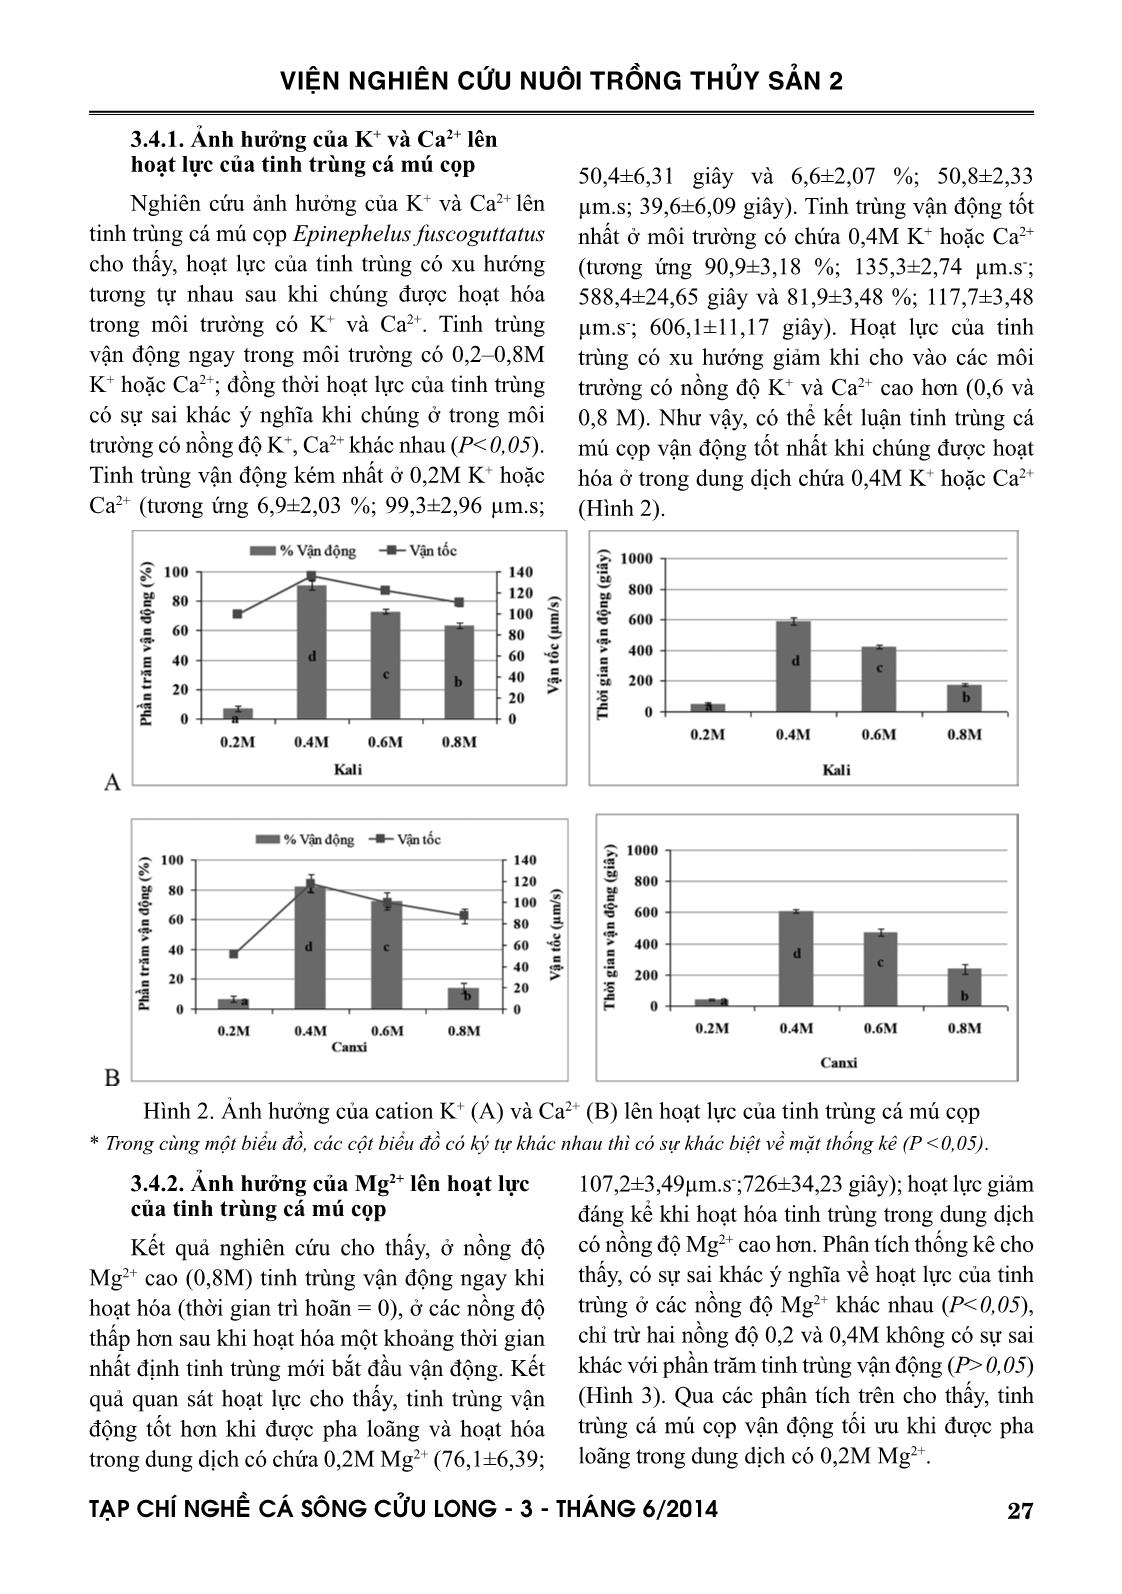 Một số đặc tính của tinh trùng và ảnh hưởng các cation lên hoạt lực của tinh trùng cá mú cọp (Epinephelus fuscoguttatus Forsskal, 1775) trang 5